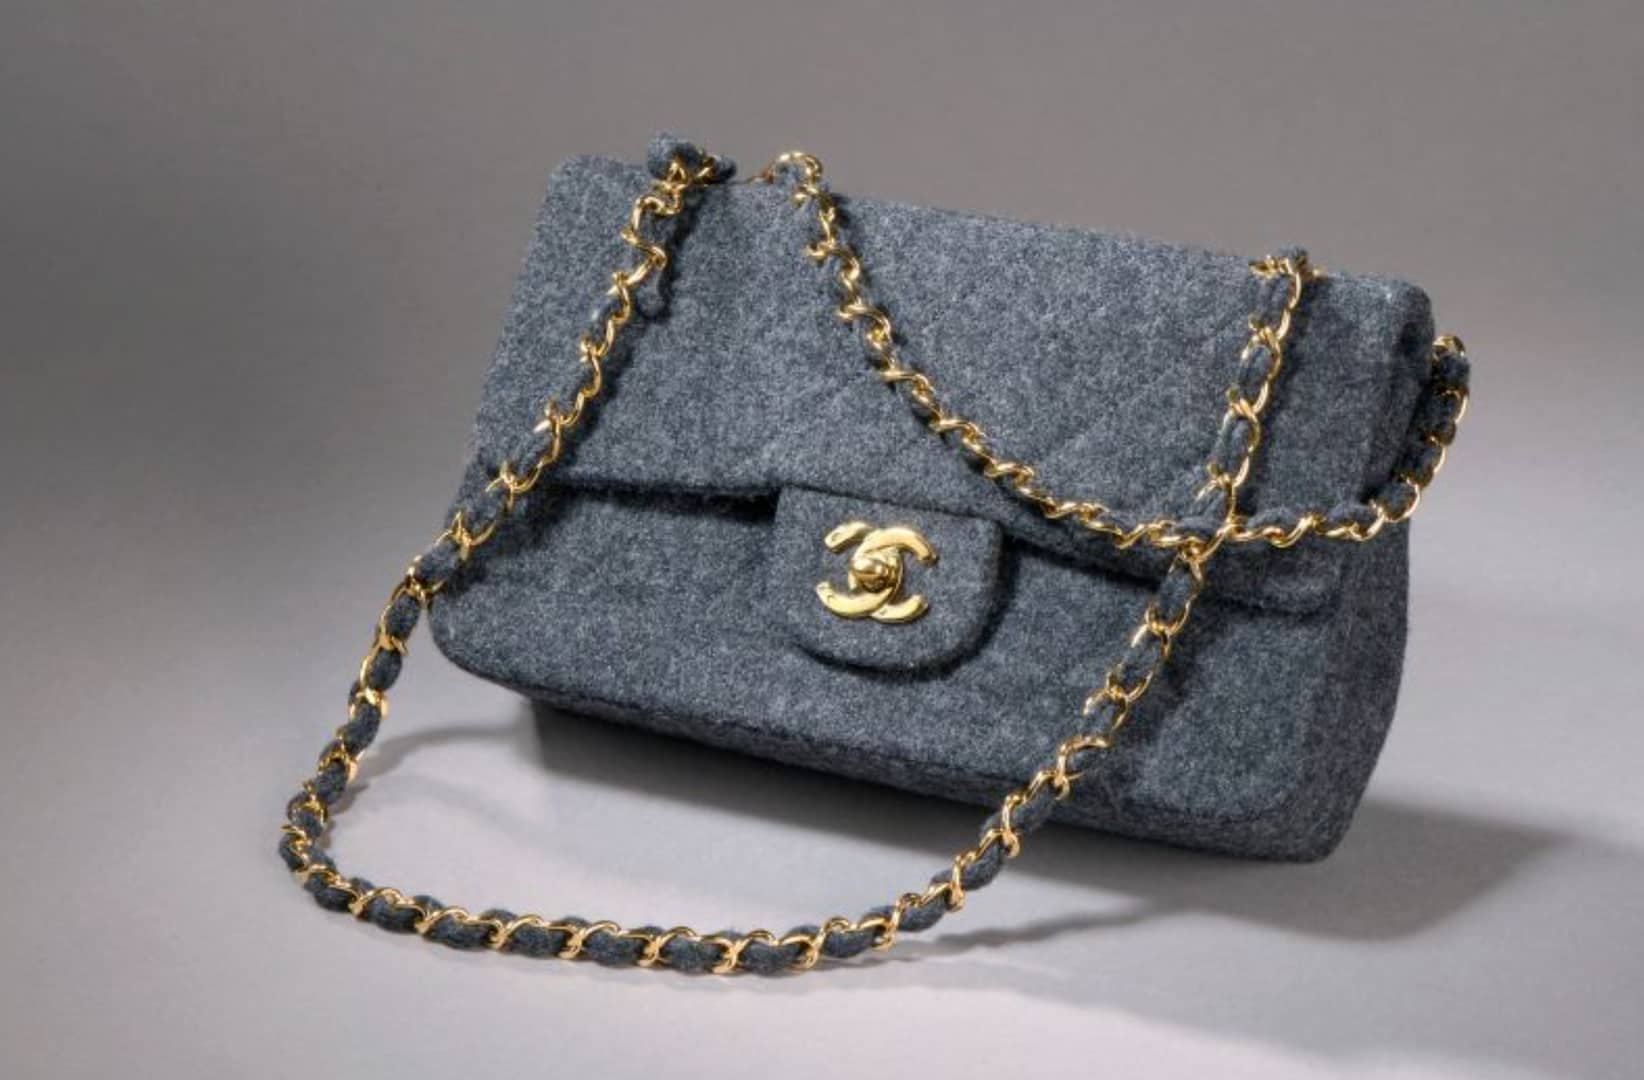 Comment reconnaître un sac Chanel authentique  Expertisez